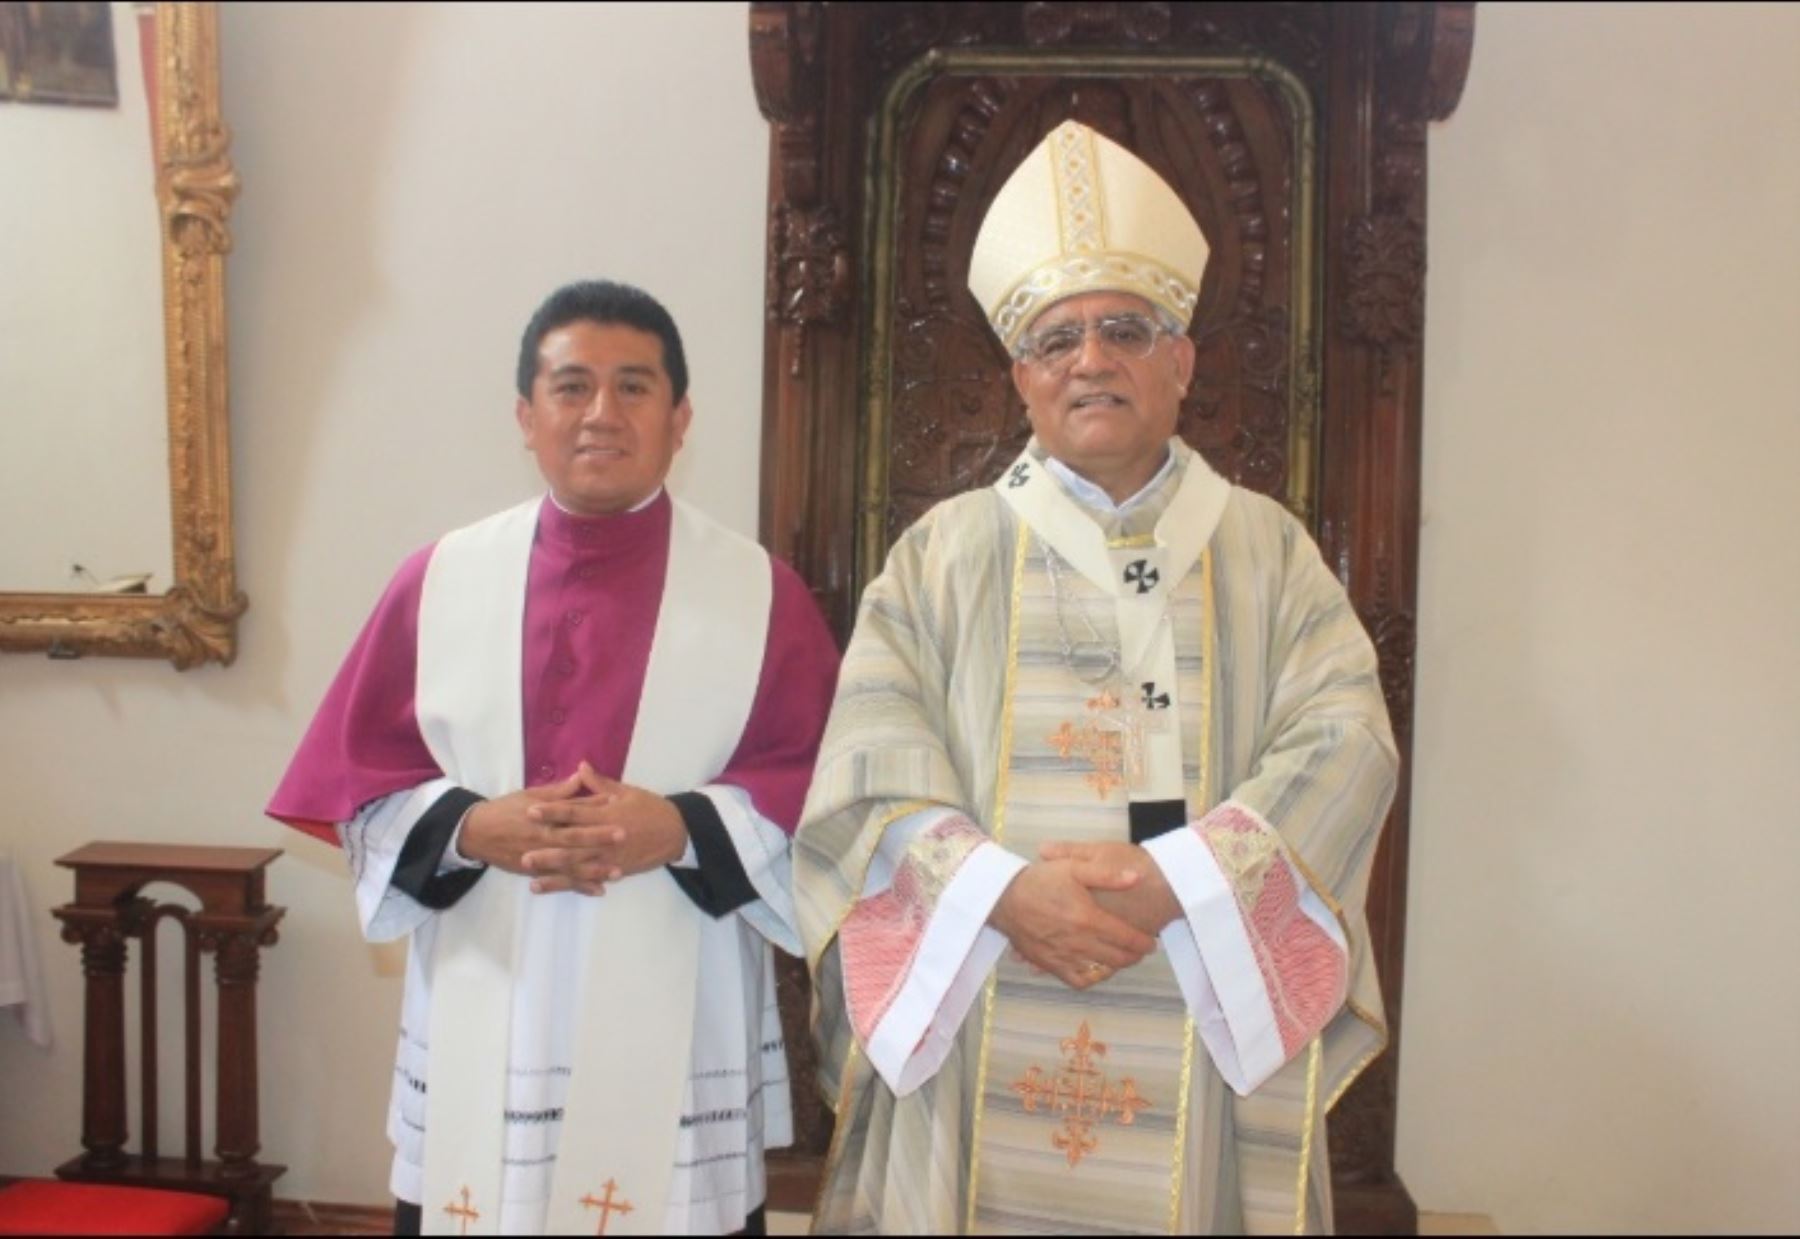 El Papa Francisco nombró obispo titular de Puzia de Bizacena y obispo auxiliar de la Arquidiócesis de Trujillo, al reverendo Francisco Castro Lalupú.